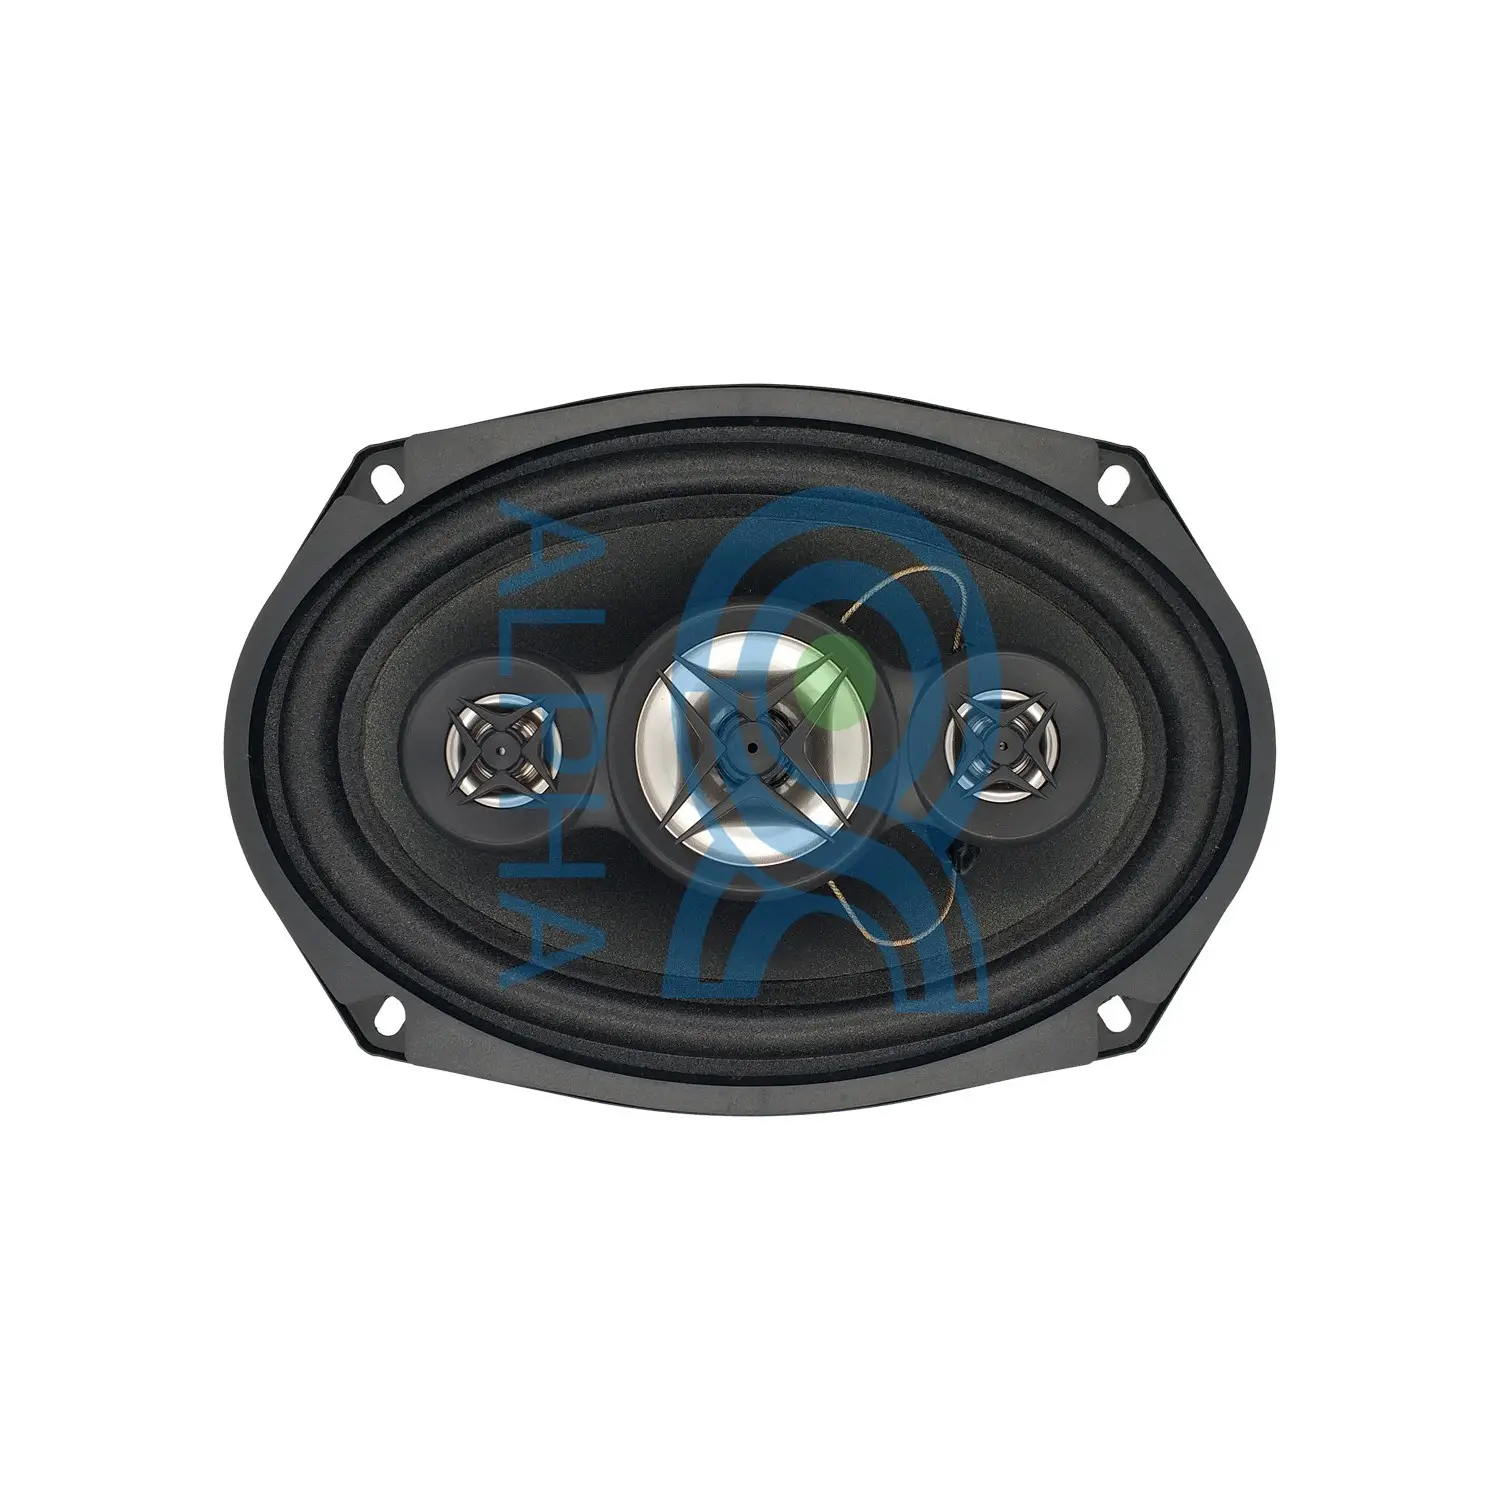 6X9 4 Cara Bertenaga Coaxial Speaker Mobil Unit Musik Mobil Subwoofer Amplifier Set Loudspeaker 6*9 Inci Speaker Mobil dengan Kisi Jala